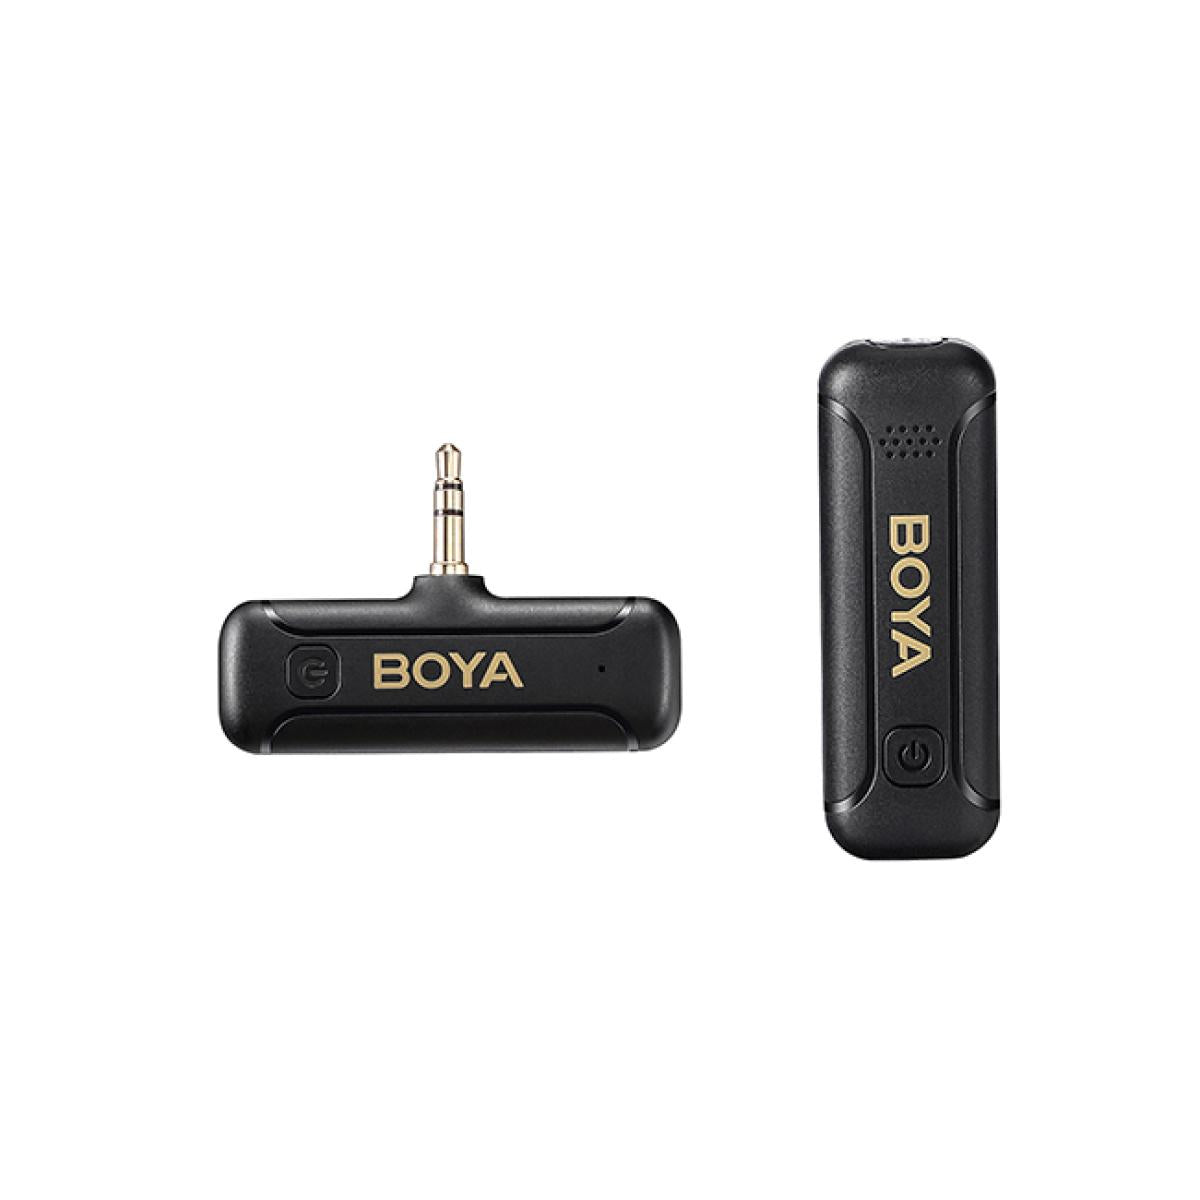 BOYA 2.4GHz AUX 3.5mm Wireless Microphone System (One Mic) - Black